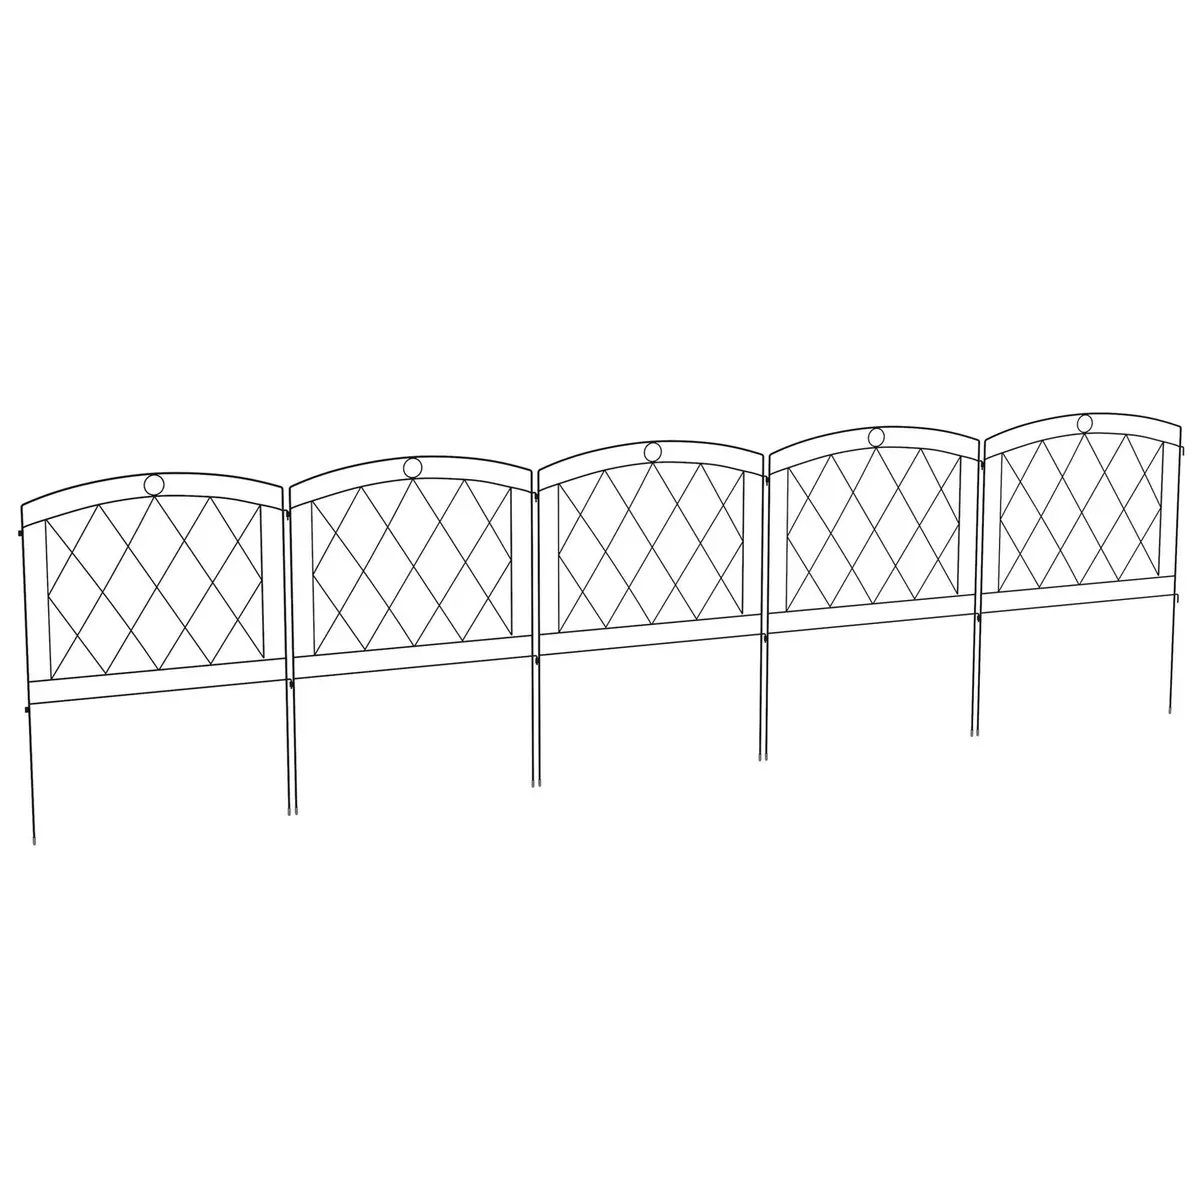 OUTSUNNY Lot de 5 panneaux de clôture de jardin métal noir